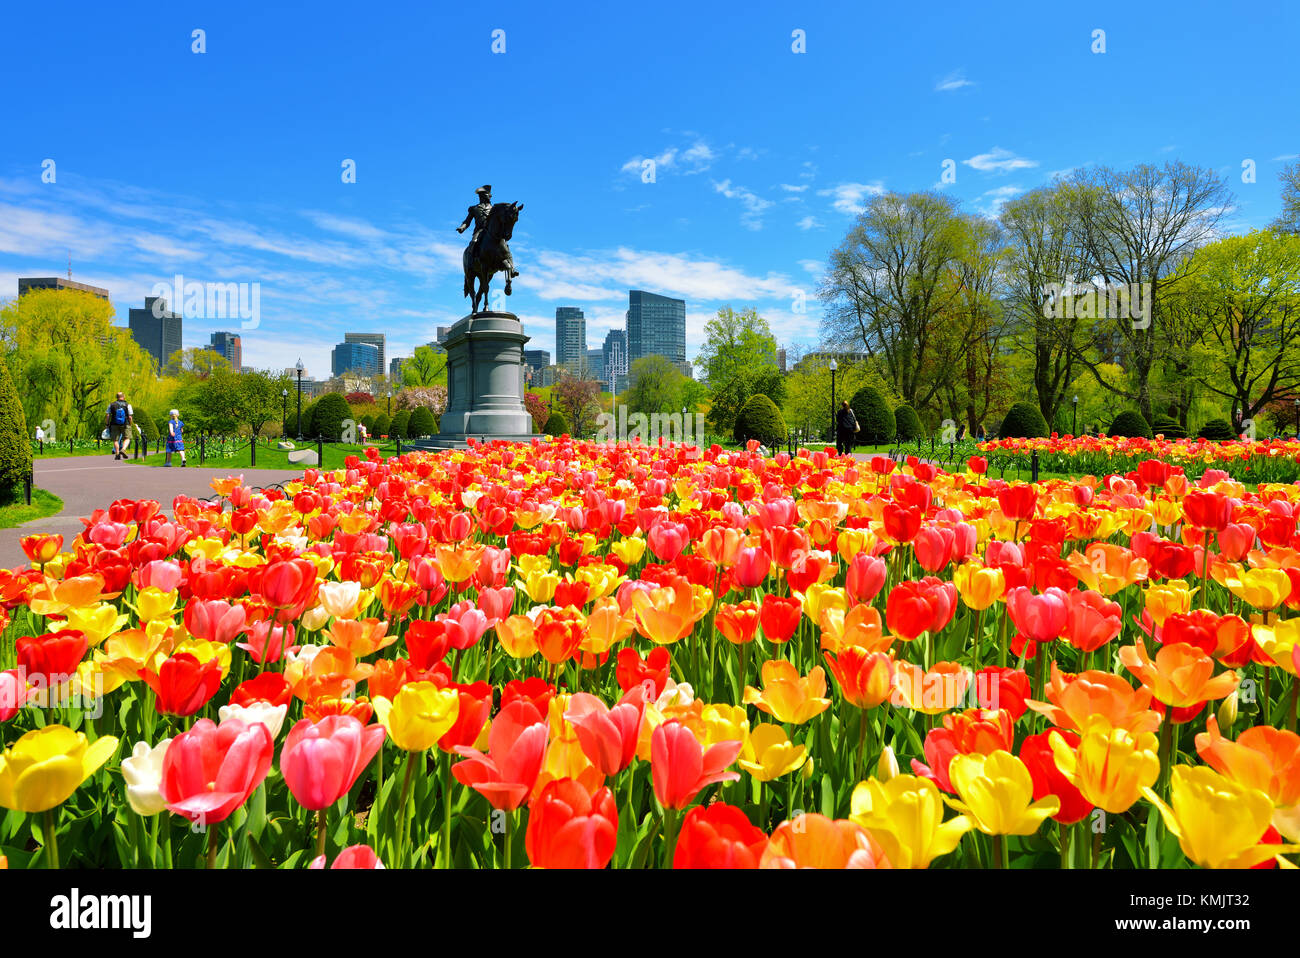 Boston Public Garden et la ville sur une belle journée de printemps. Tulipes colorées planté en masse en face de la statue de George Washington. Banque D'Images